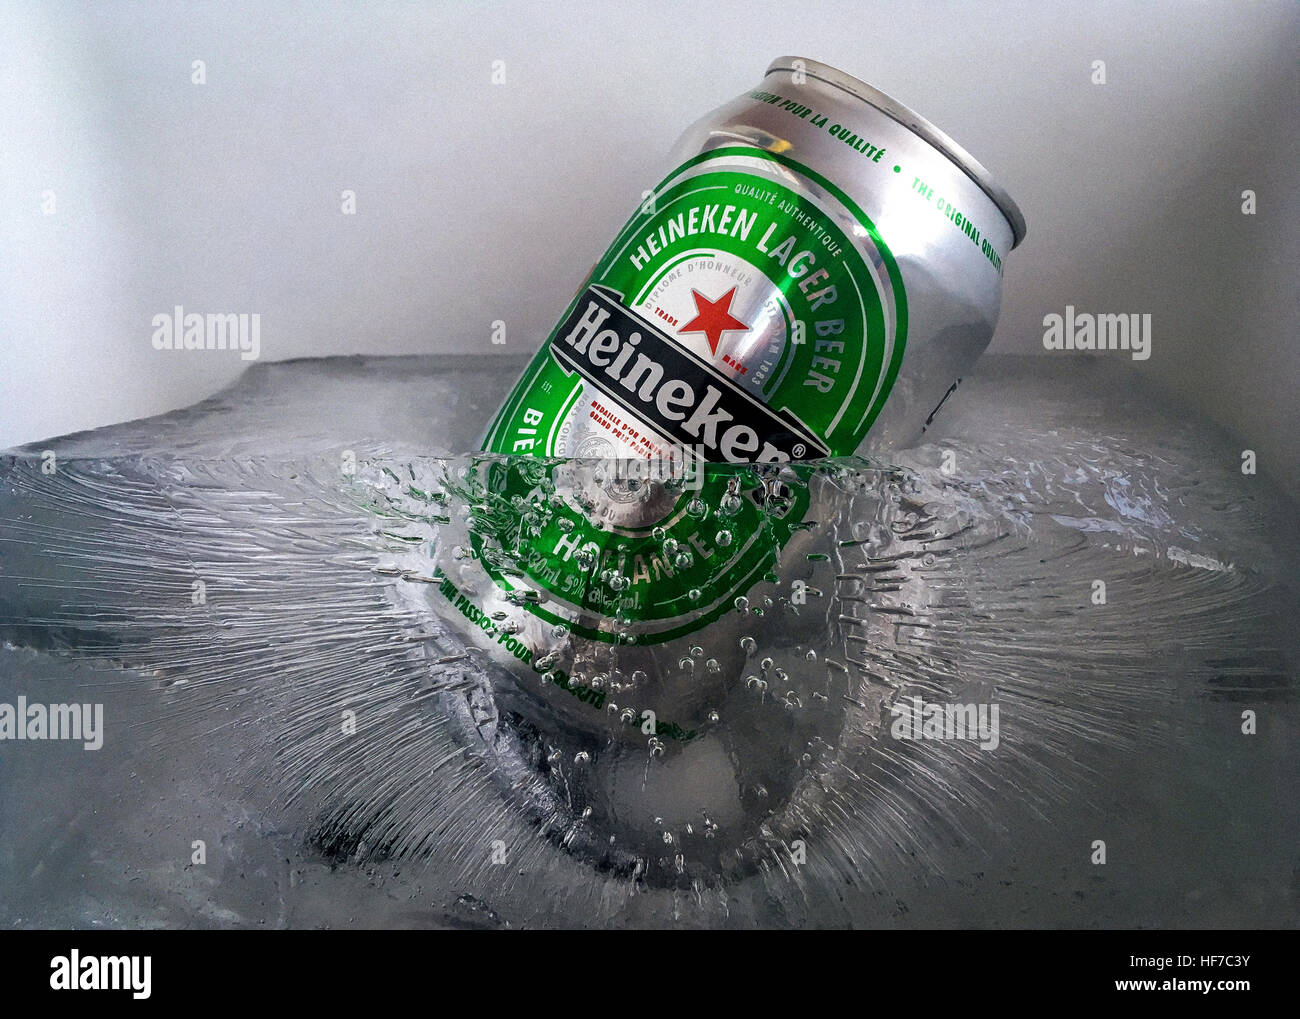 Heineken beer can Stock Photo